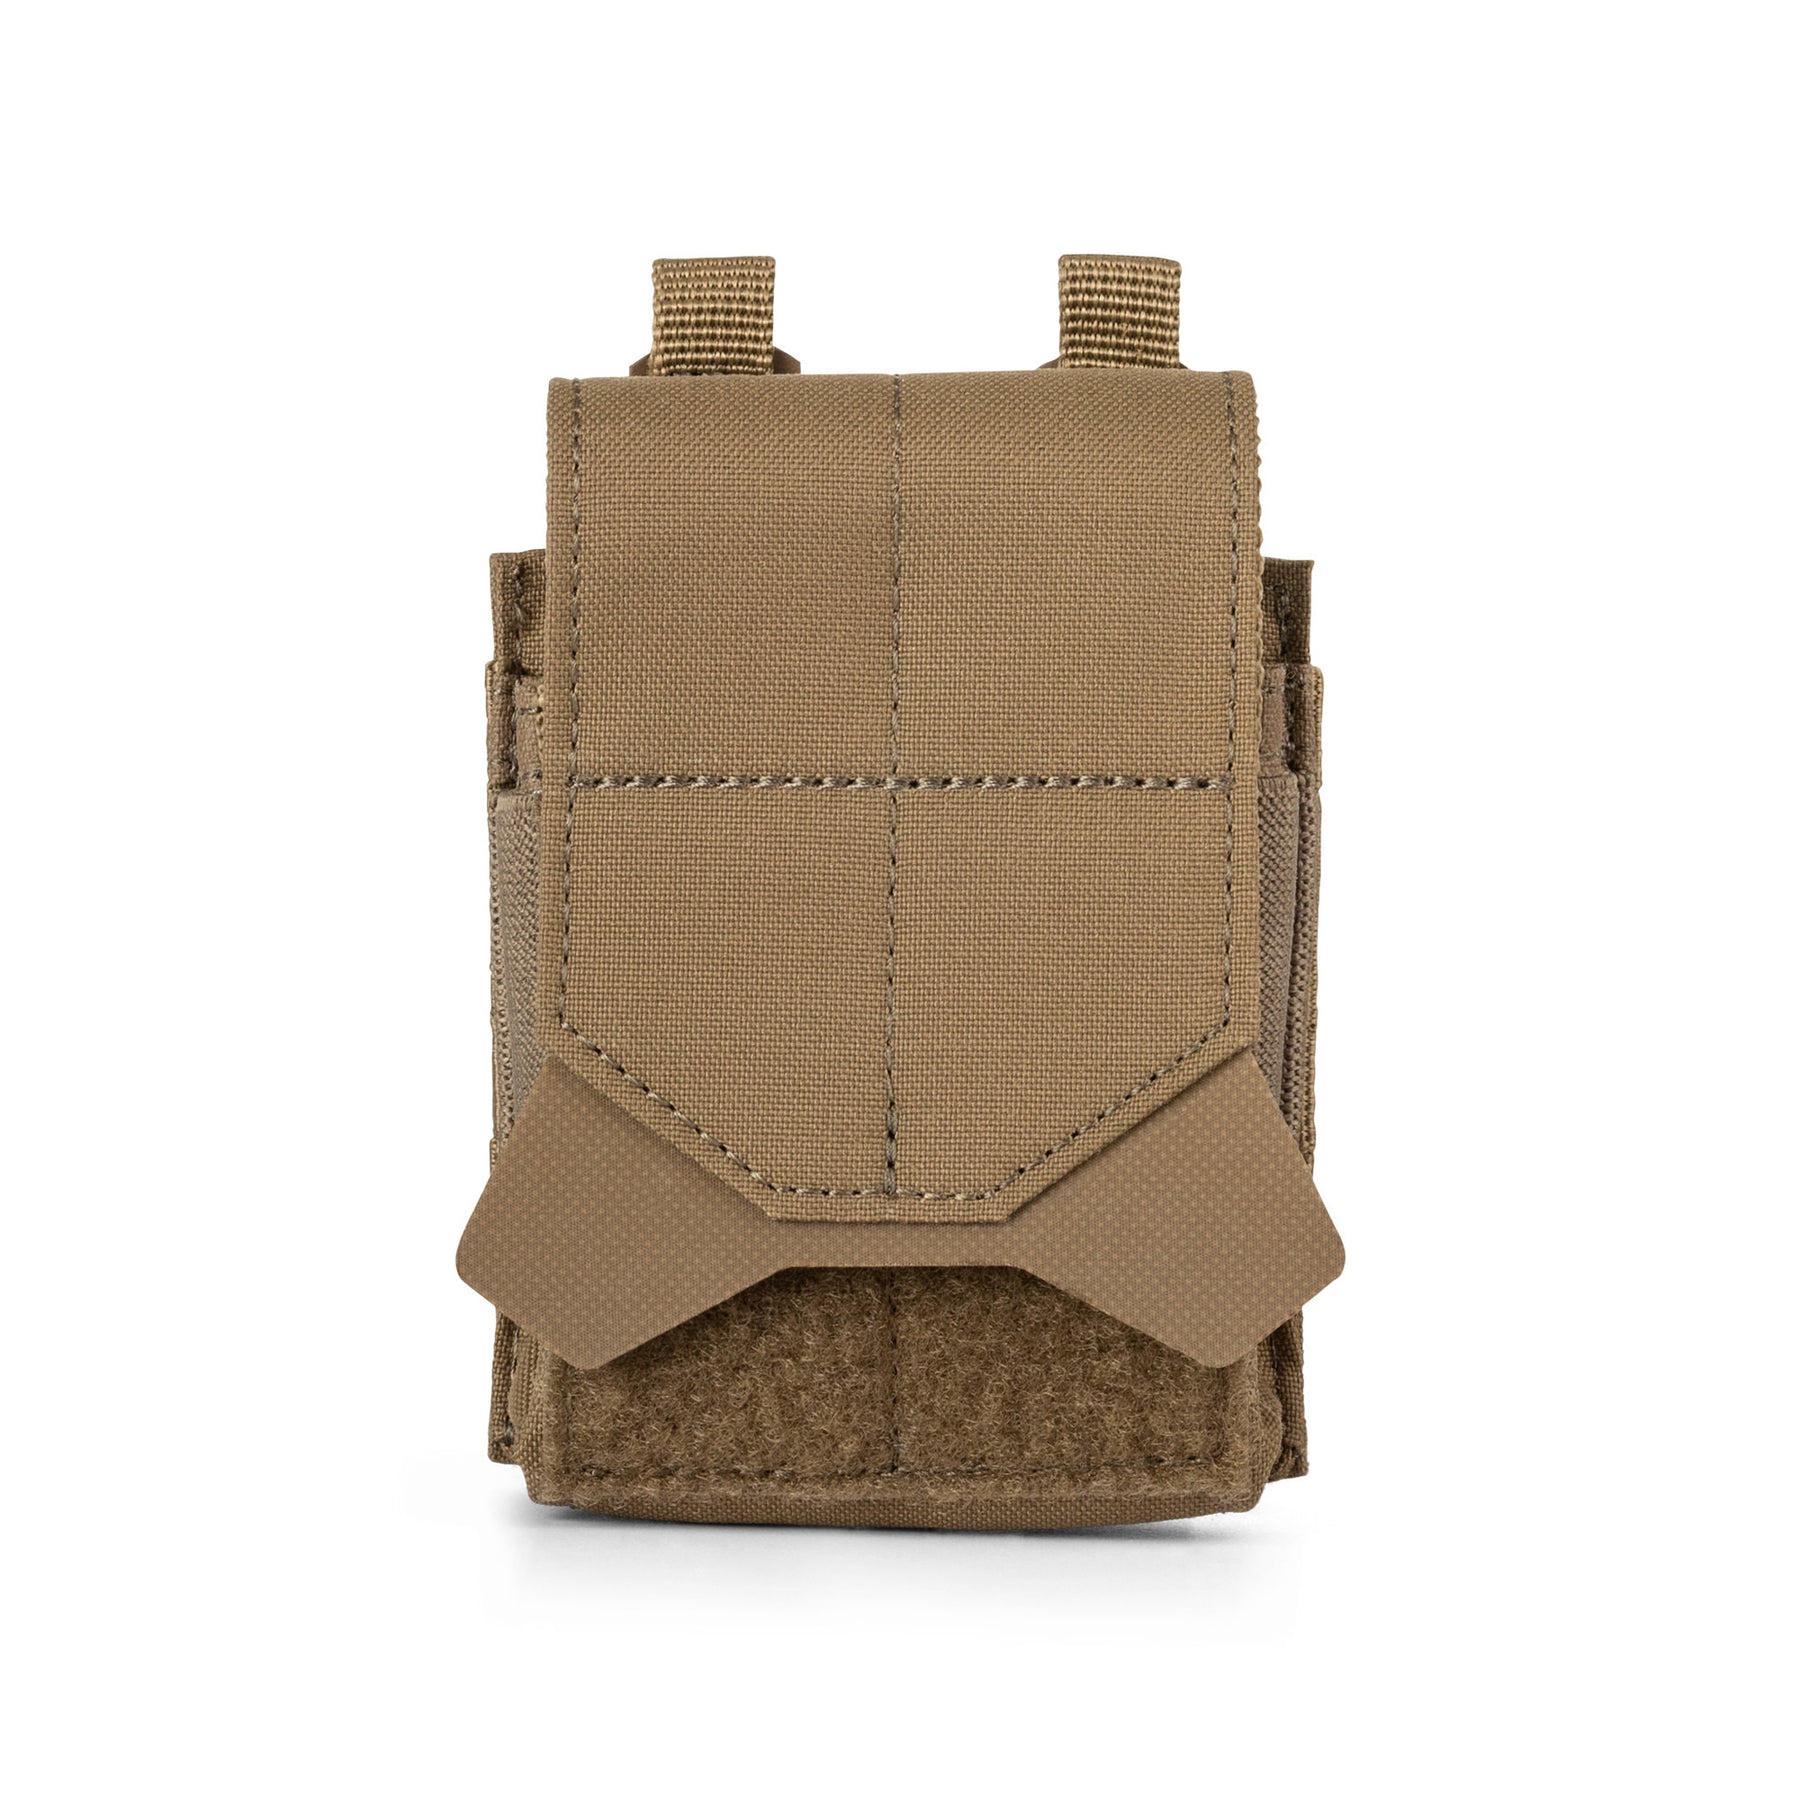 flex cuff pouch di 5.11 - tasca per manette kangaroo- vista frontale